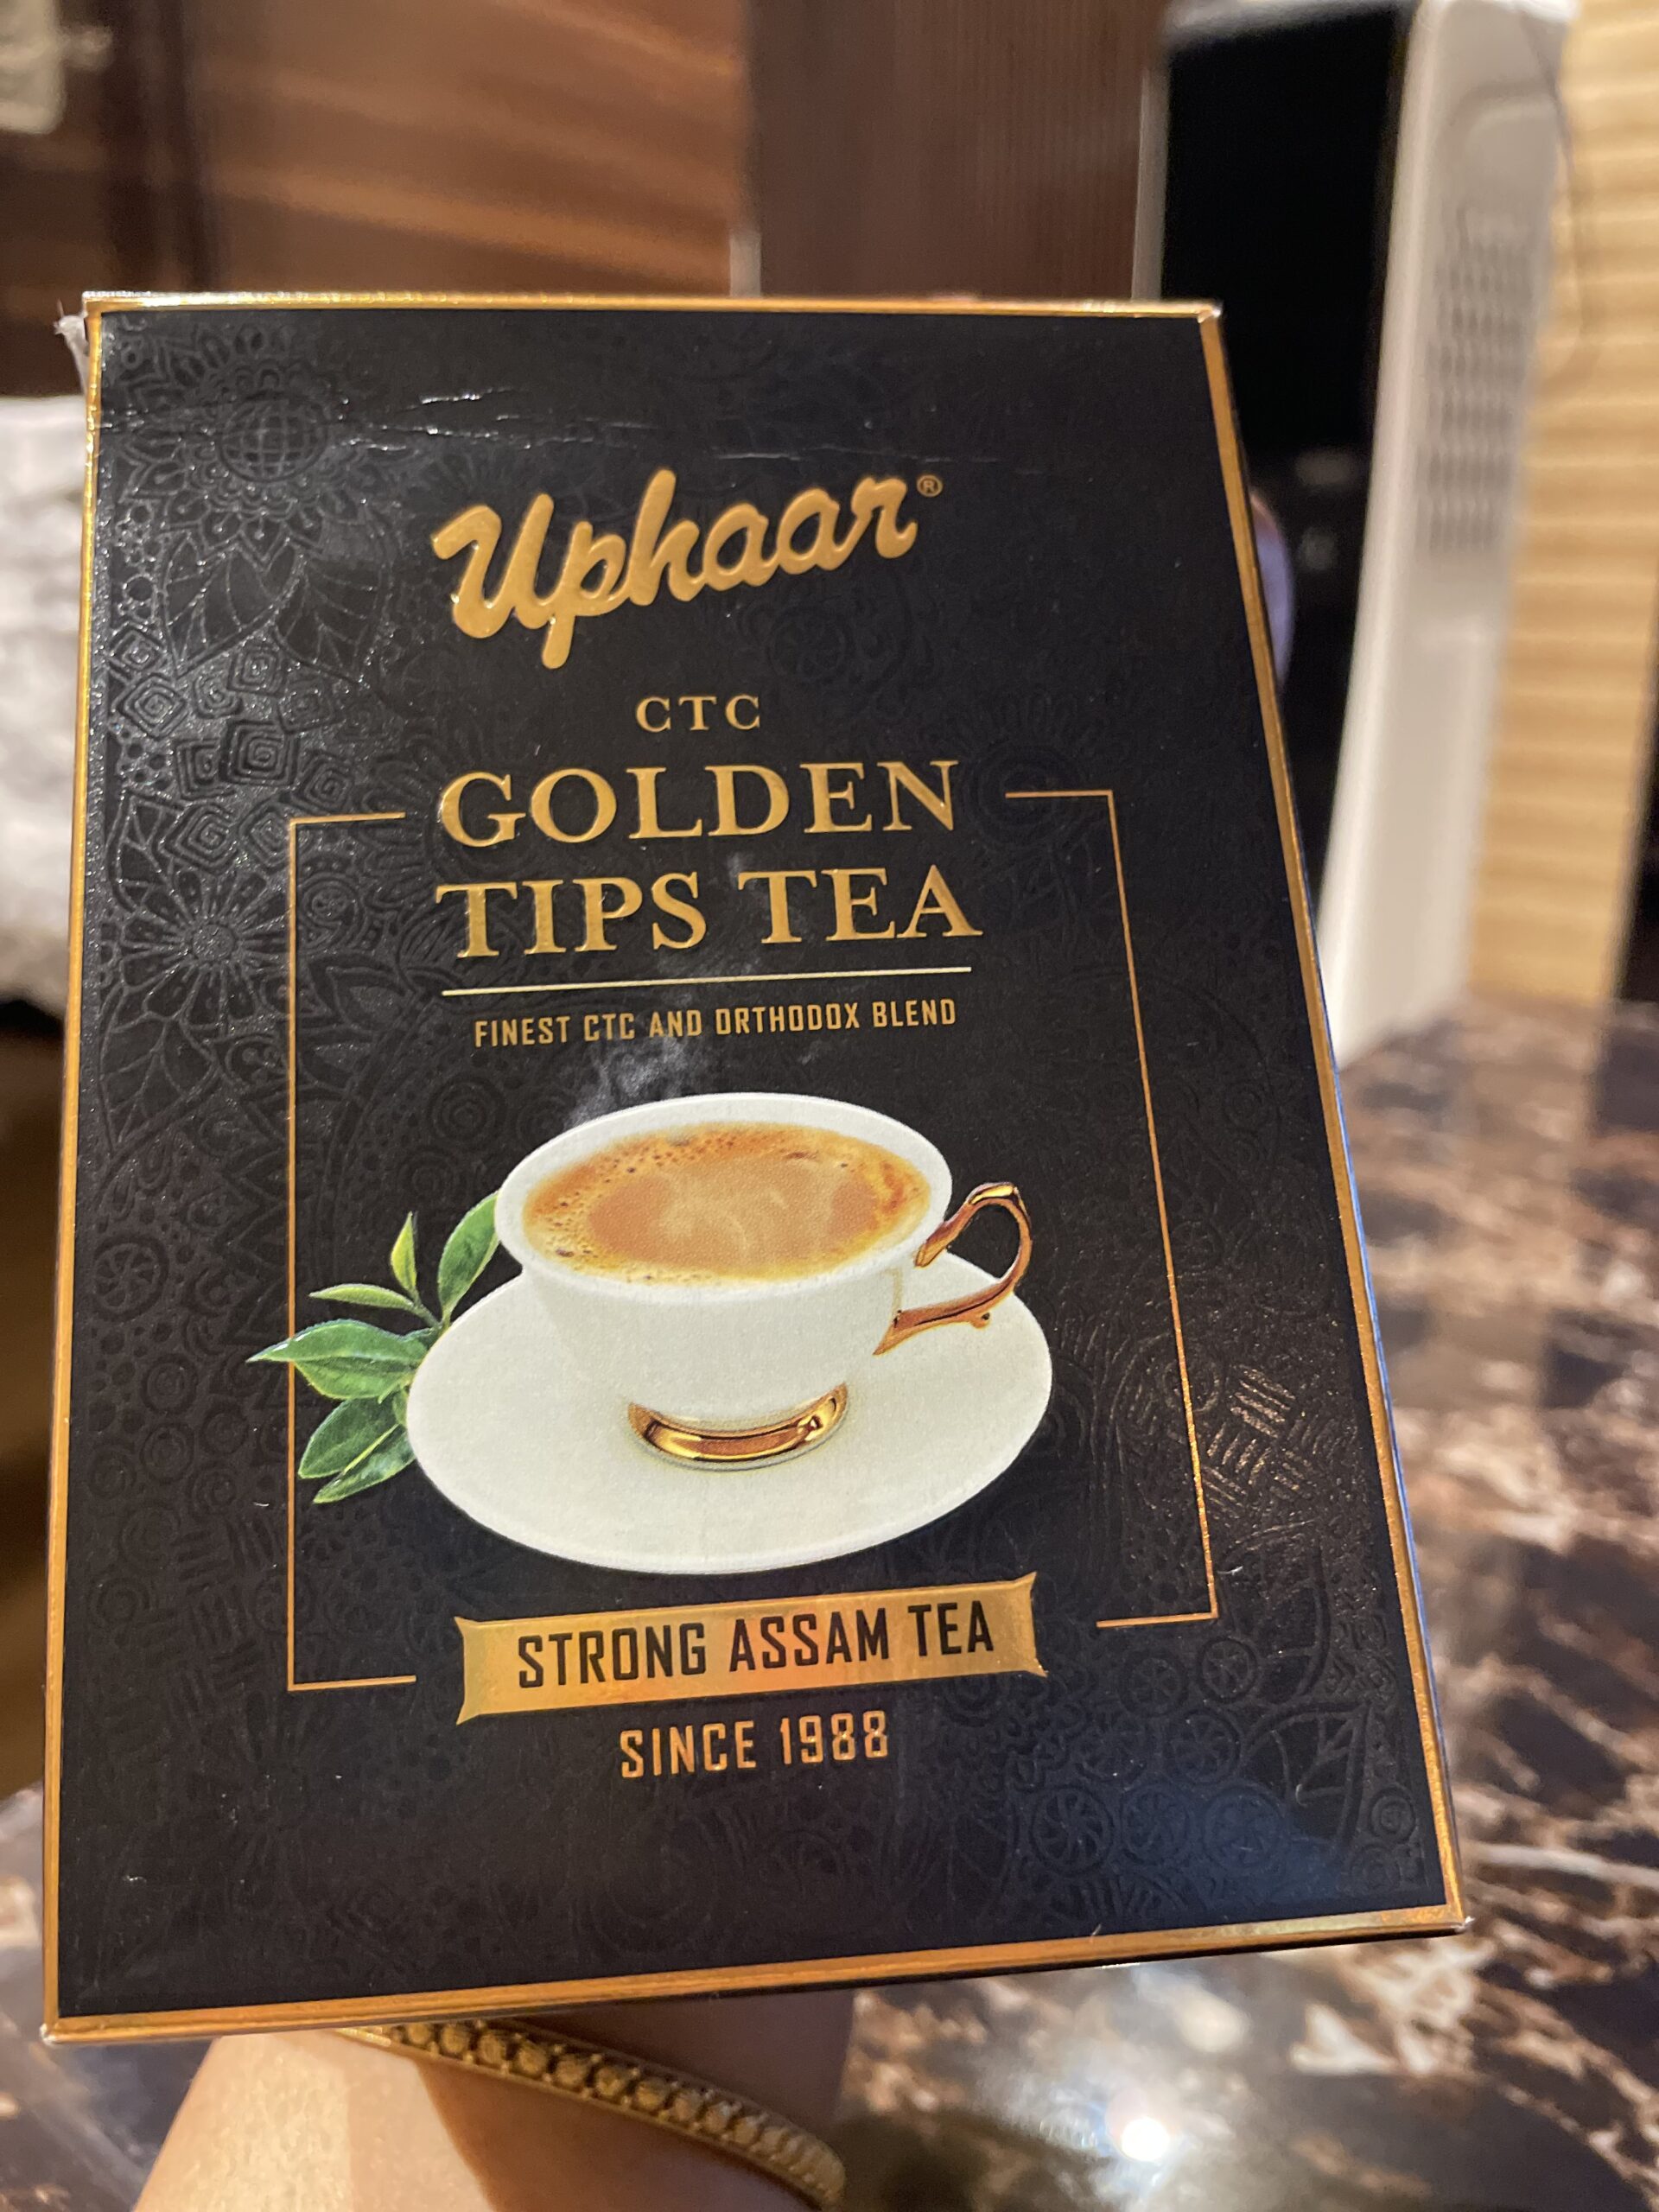 Uphaar, an Assam tea brand winning hearts since 1988